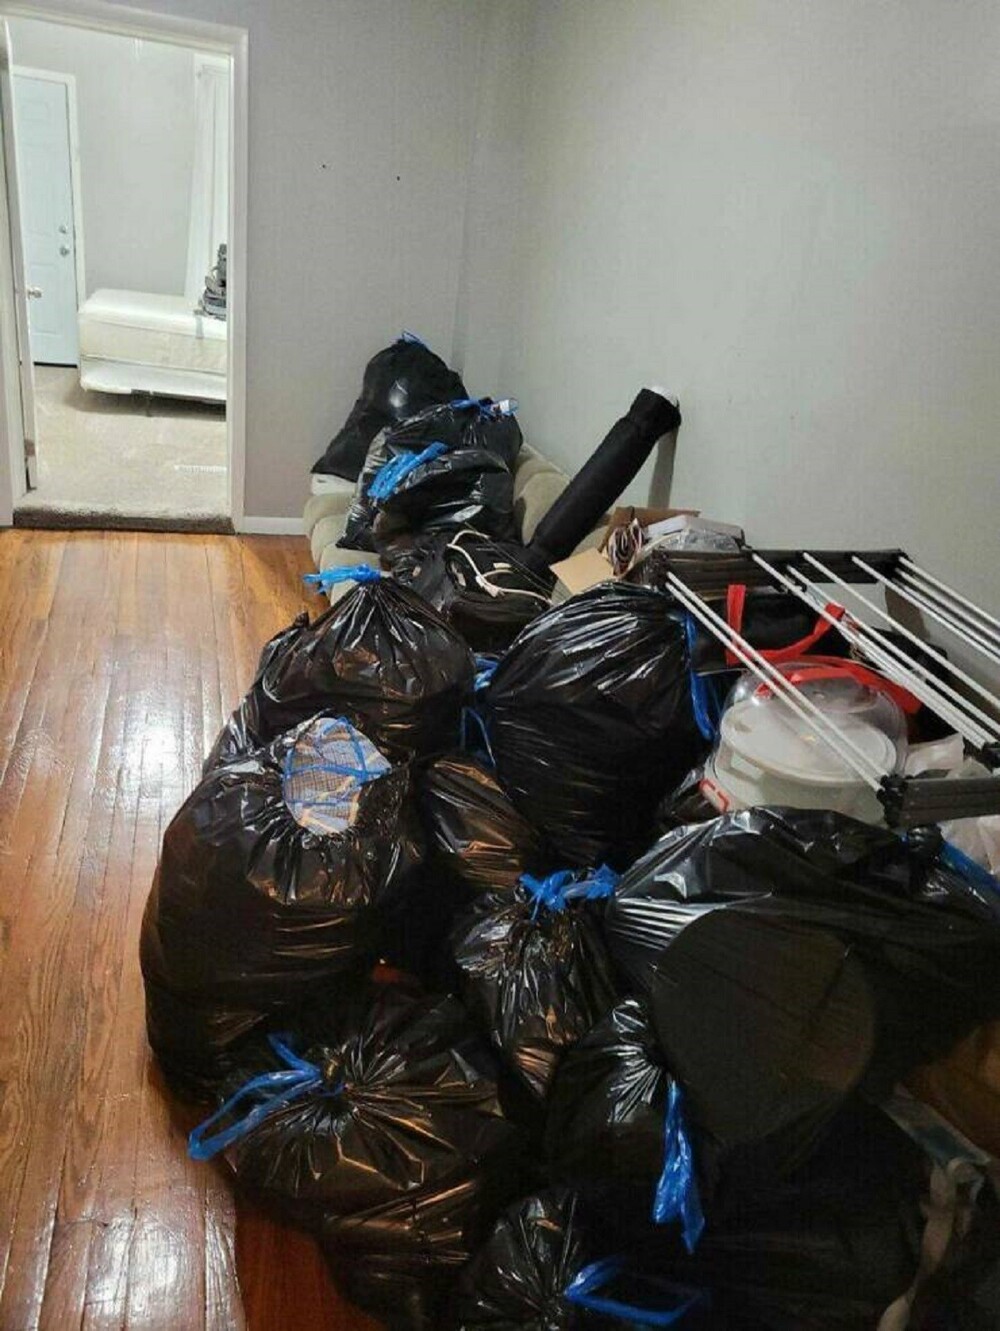 7. "После изнурительного рабочего дня без еды, я вернулся домой в 7 вечера и обнаружил все свои вещи в мусорных пакетах"